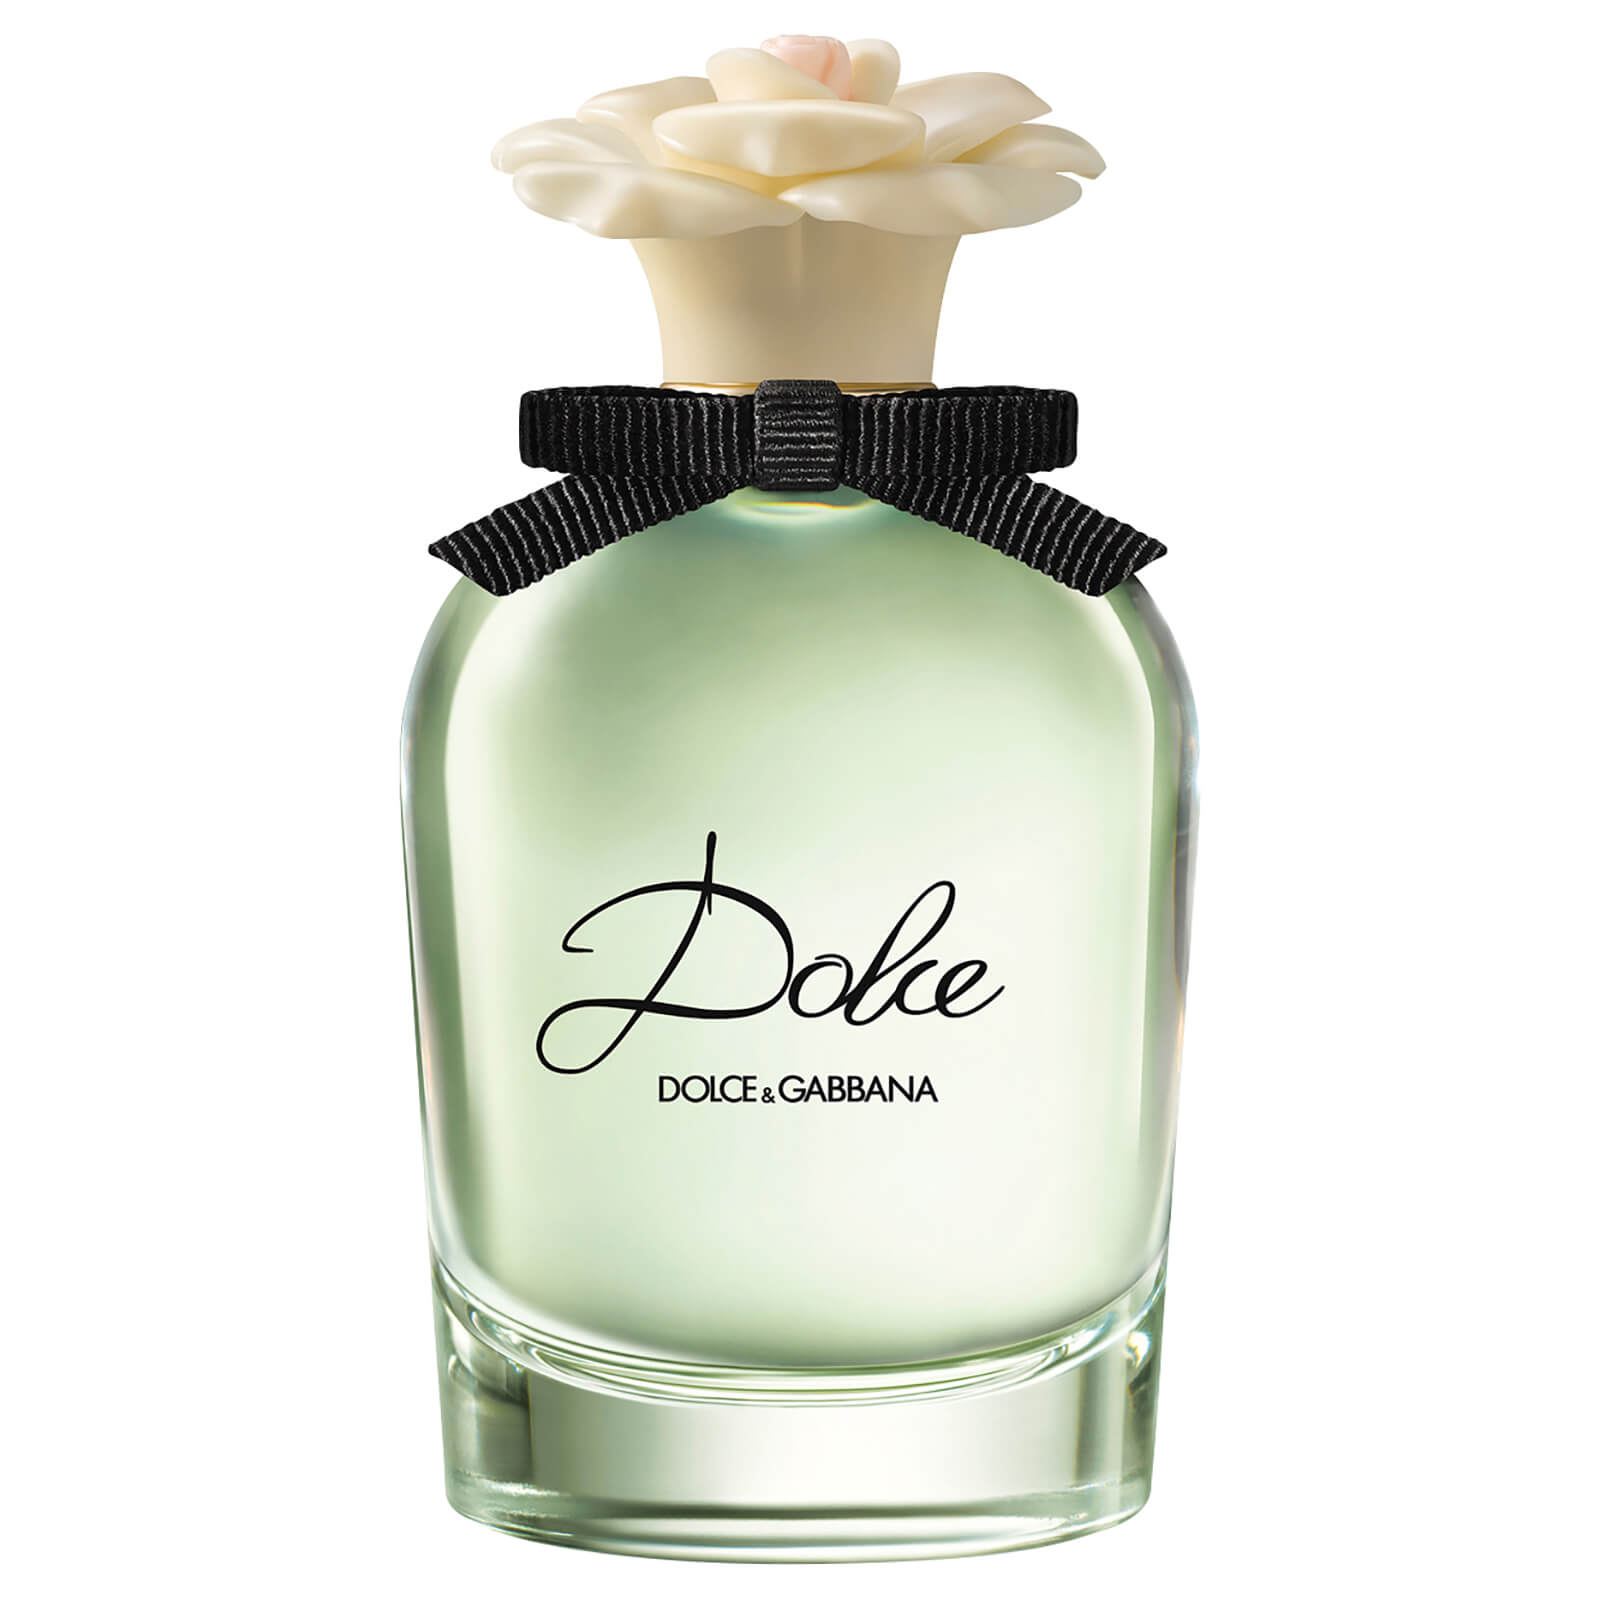 Dolce&Gabbana Dolce Eau de Parfum – 75ml